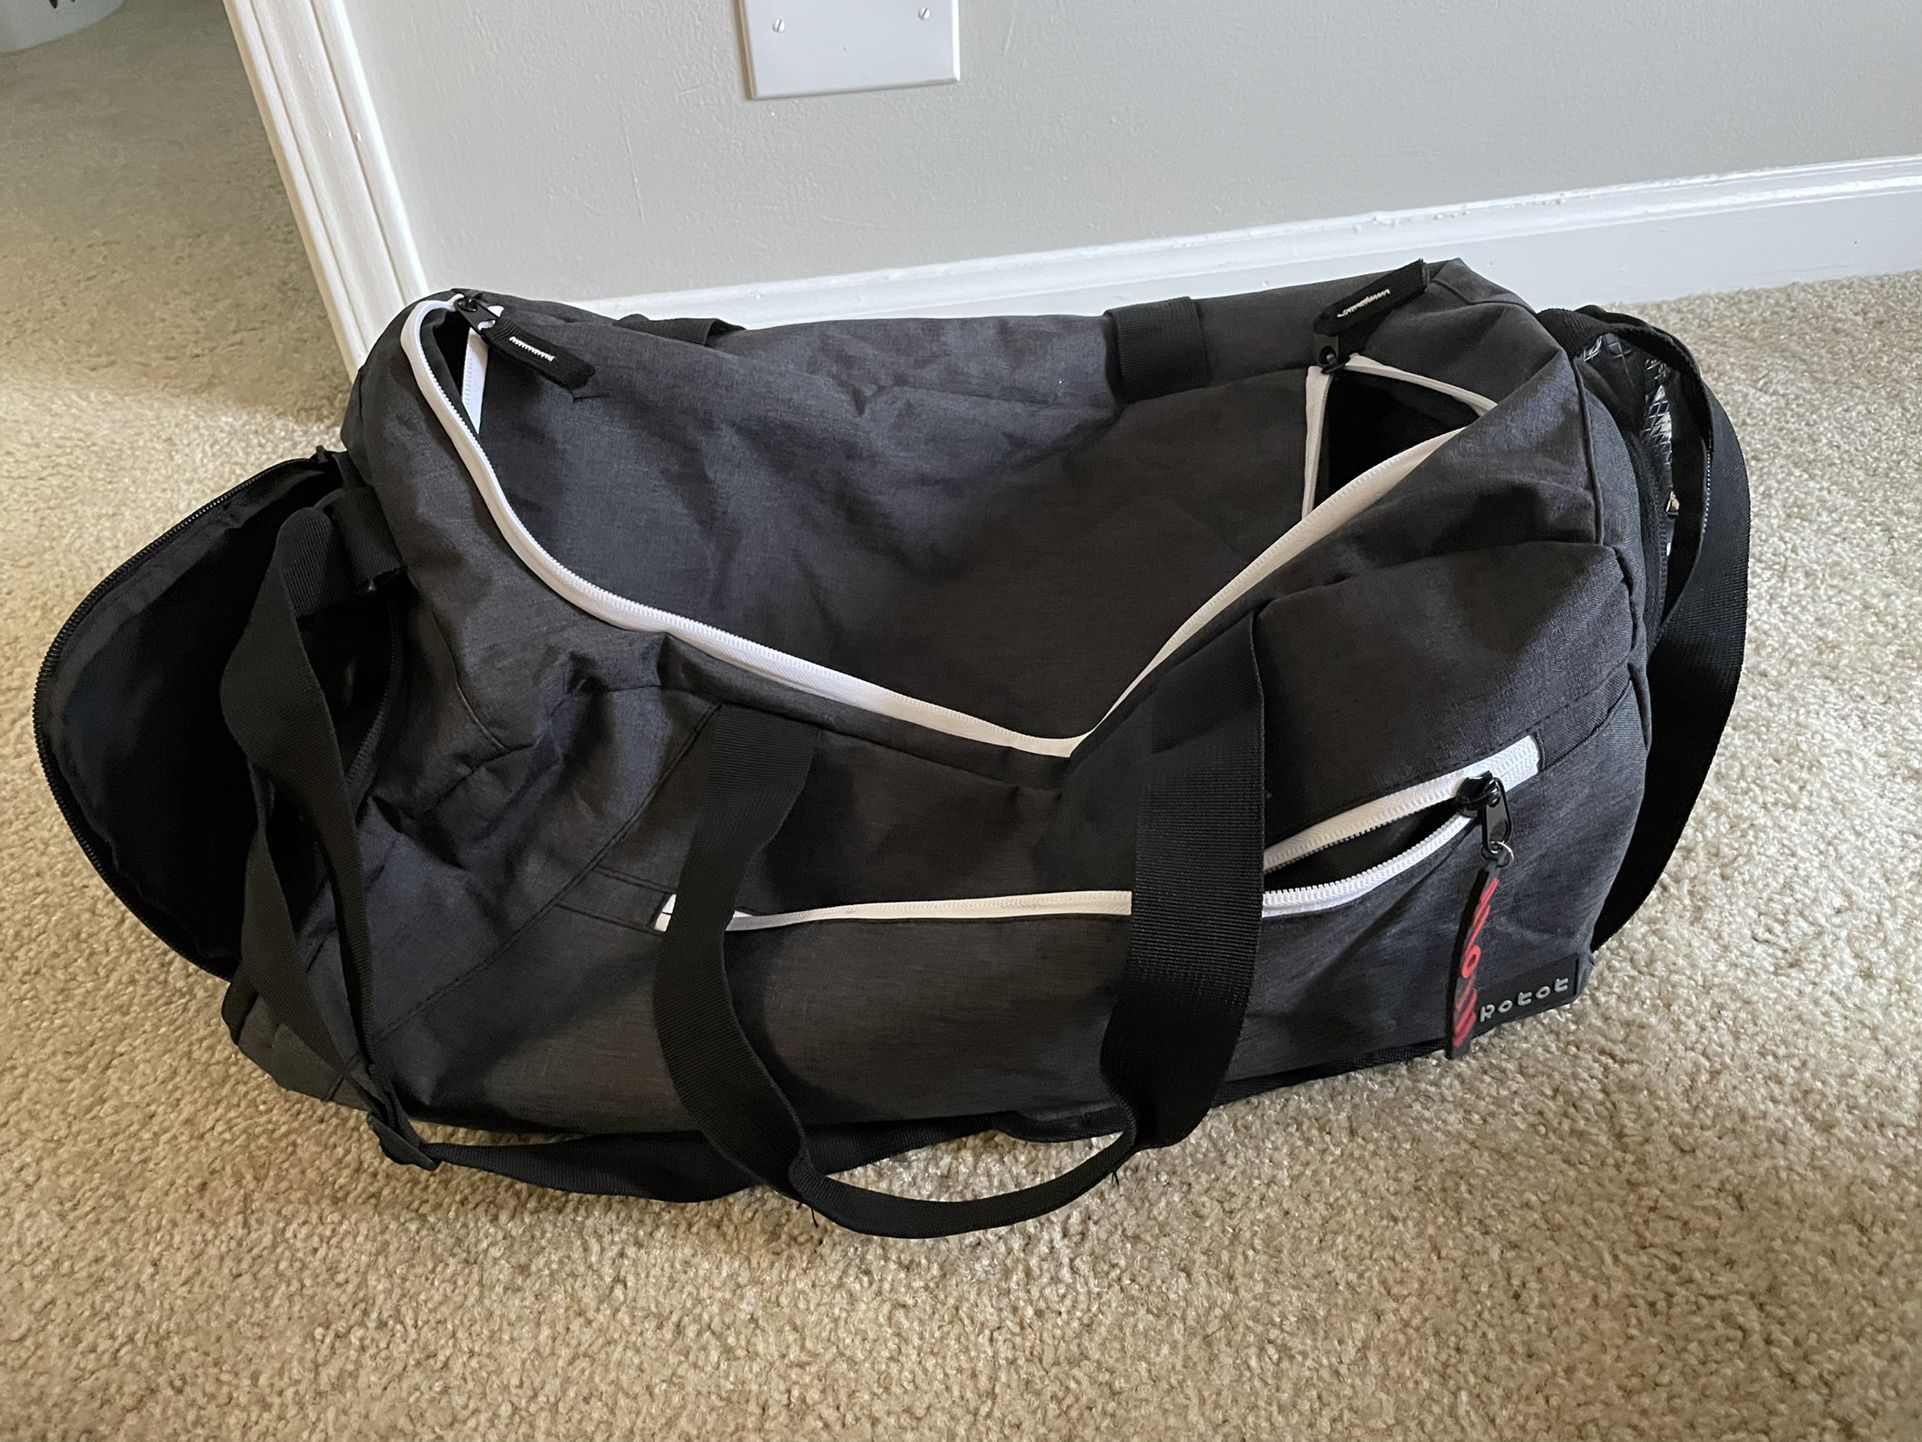 Robot travel Duffle Bag Carry On Luggage Gym Bag